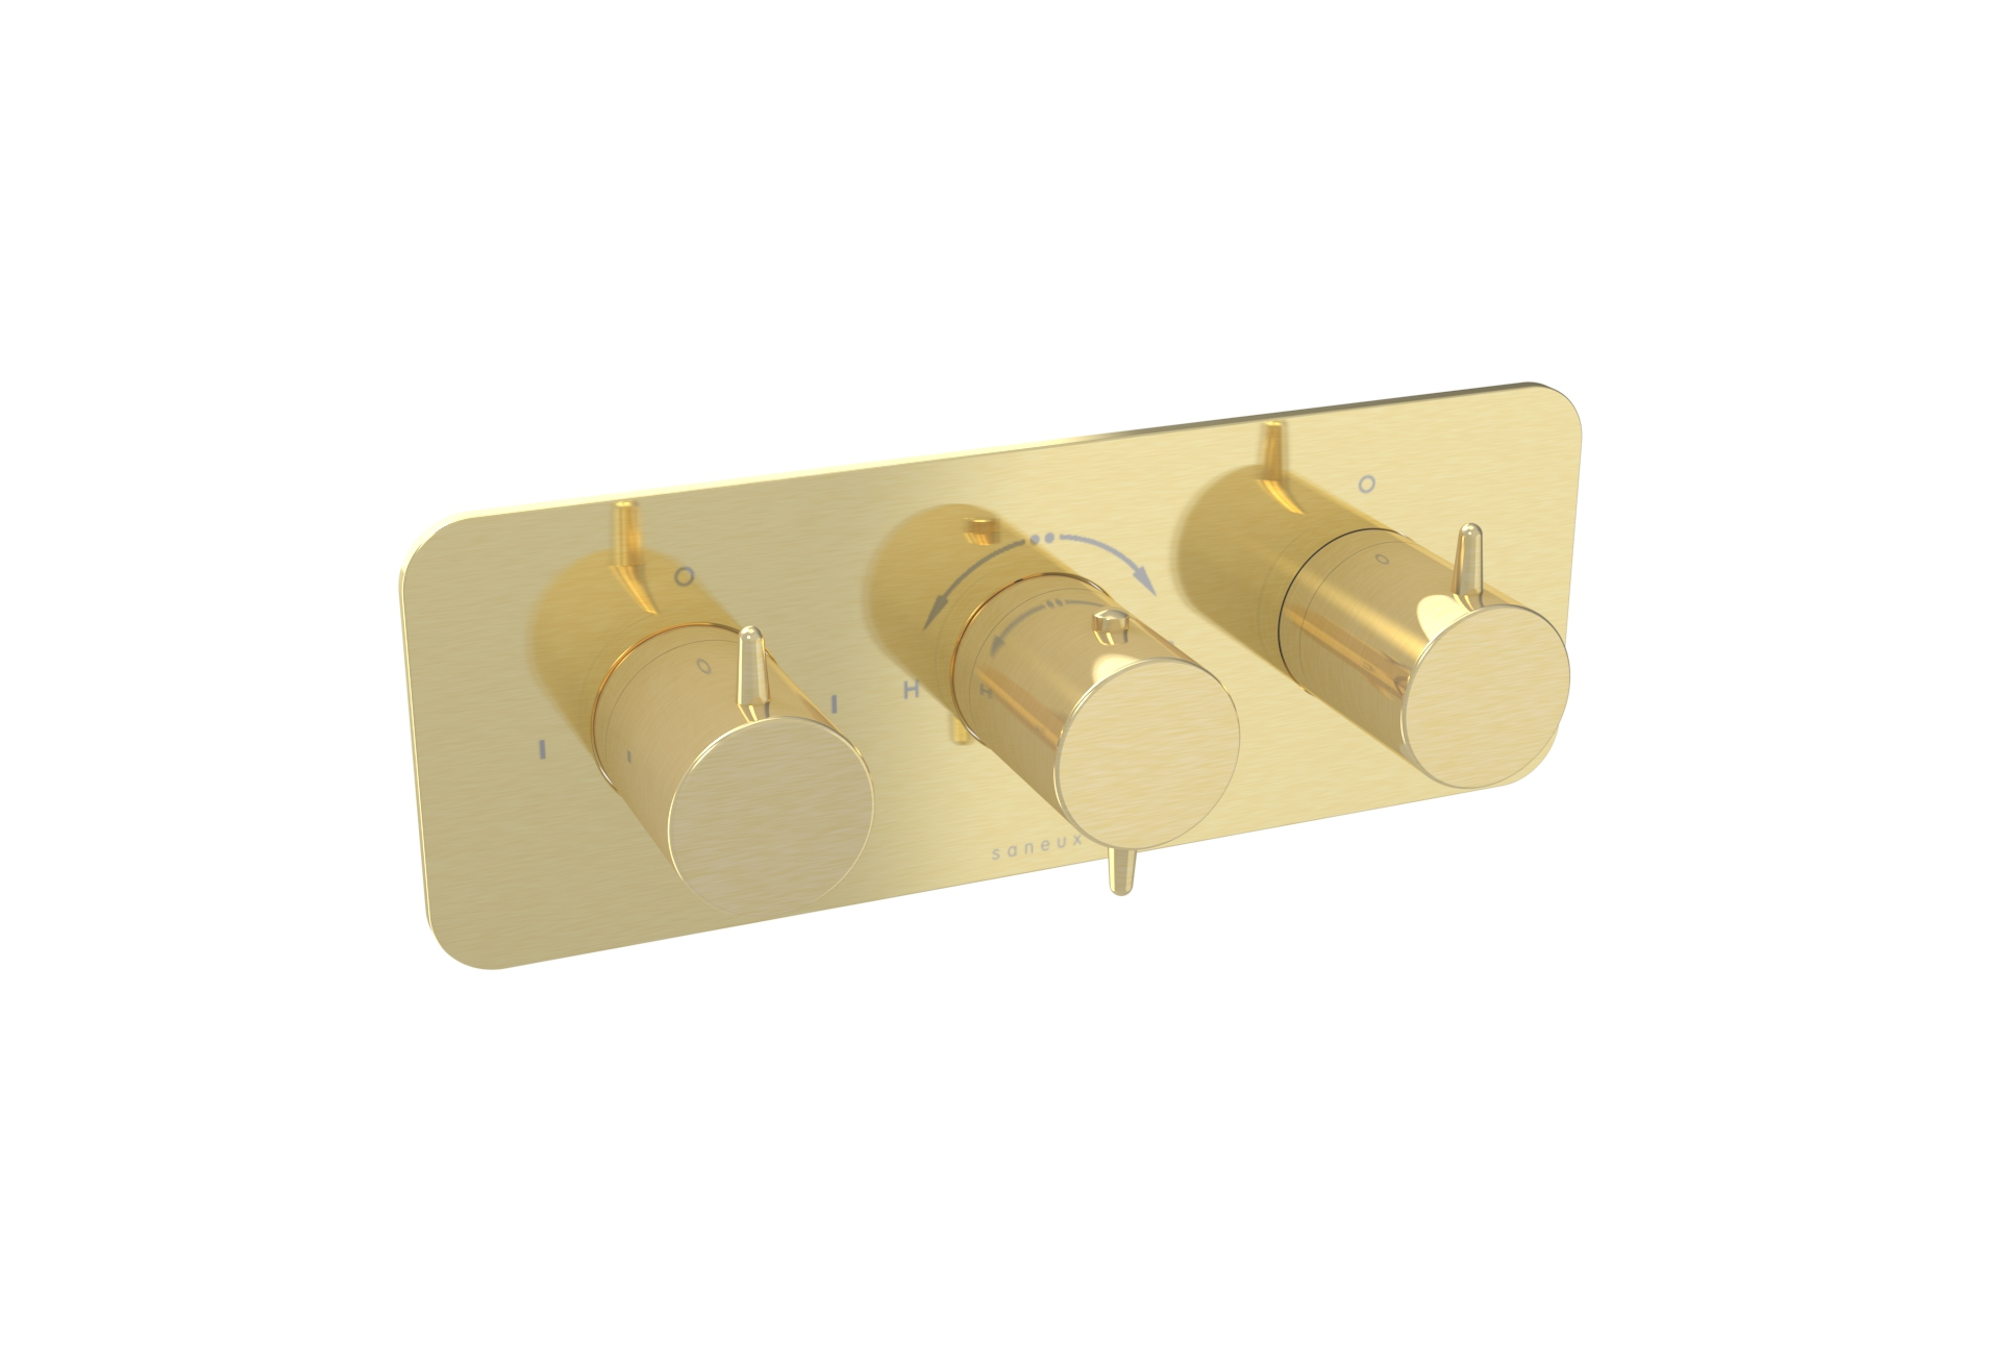 EDEN 3 way thermostatic shower valve kit in landscape - Brushed Brass